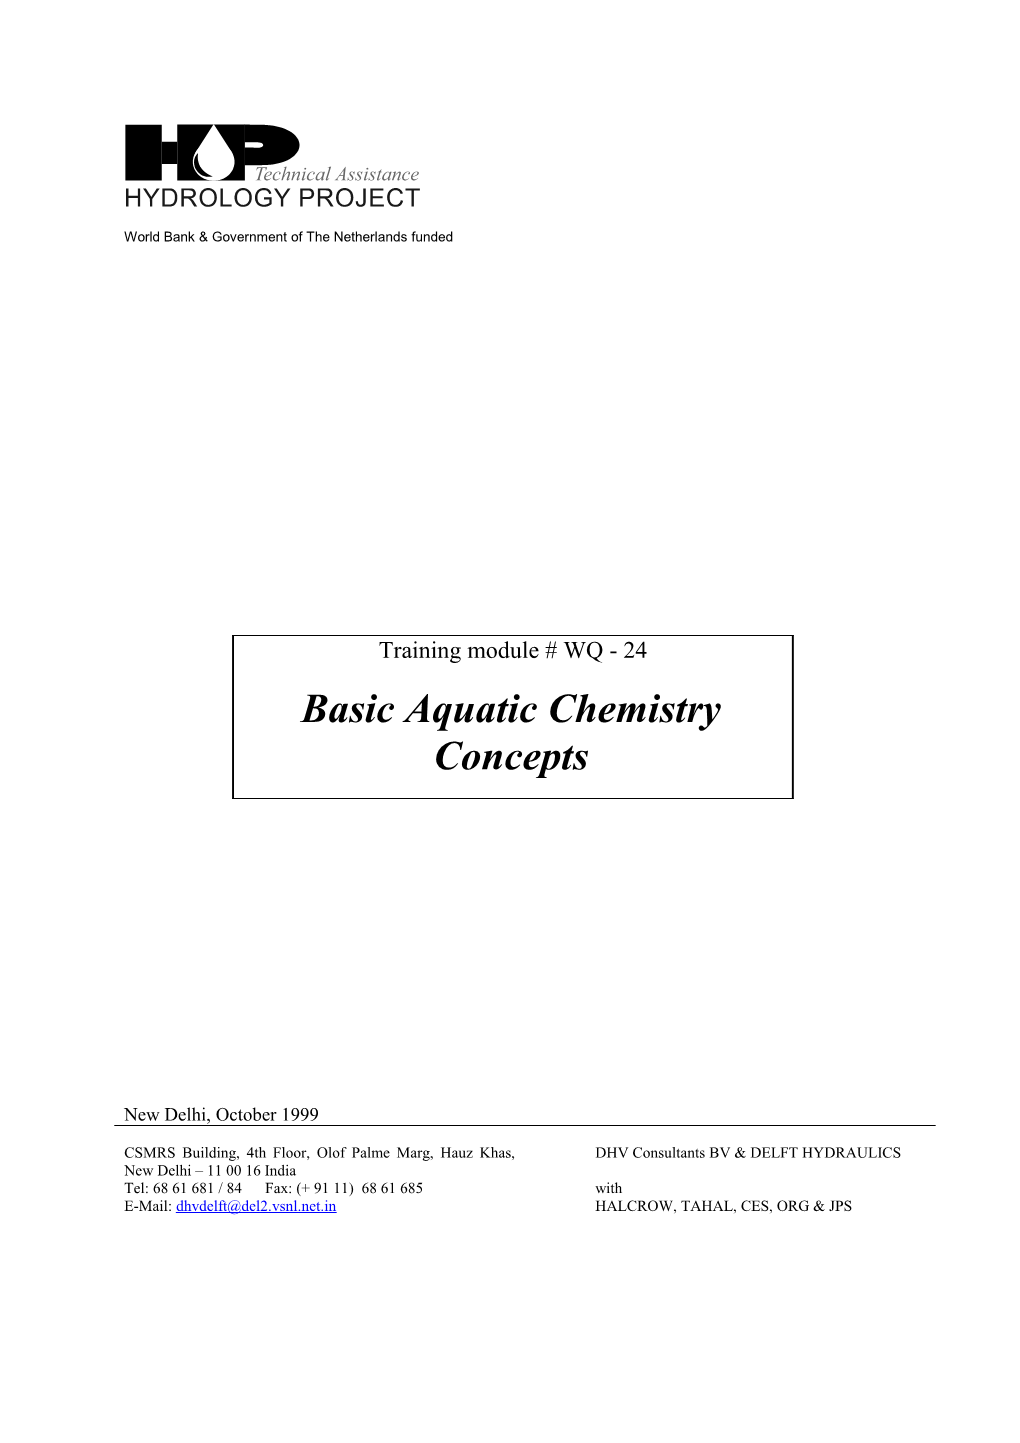 Basic Aquatic Chemistry Concepts